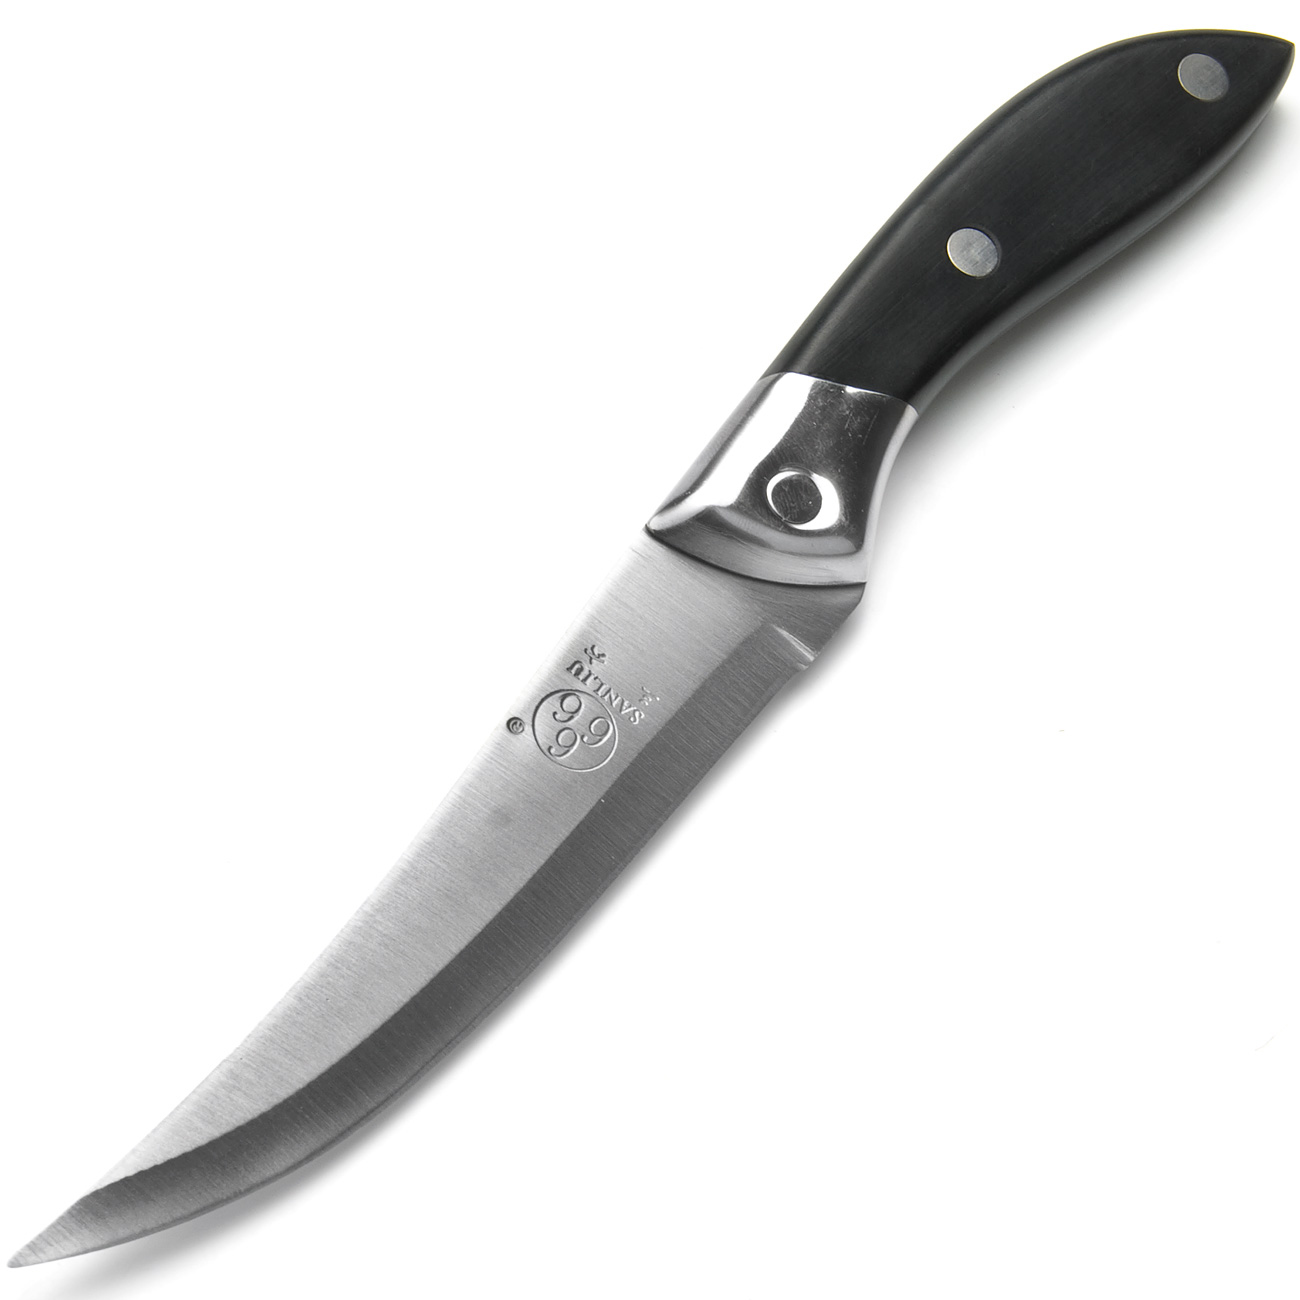 фото Нож универсальный, цвет: серебристый, черный, длина лезвия 14,5 см Sanliu 666